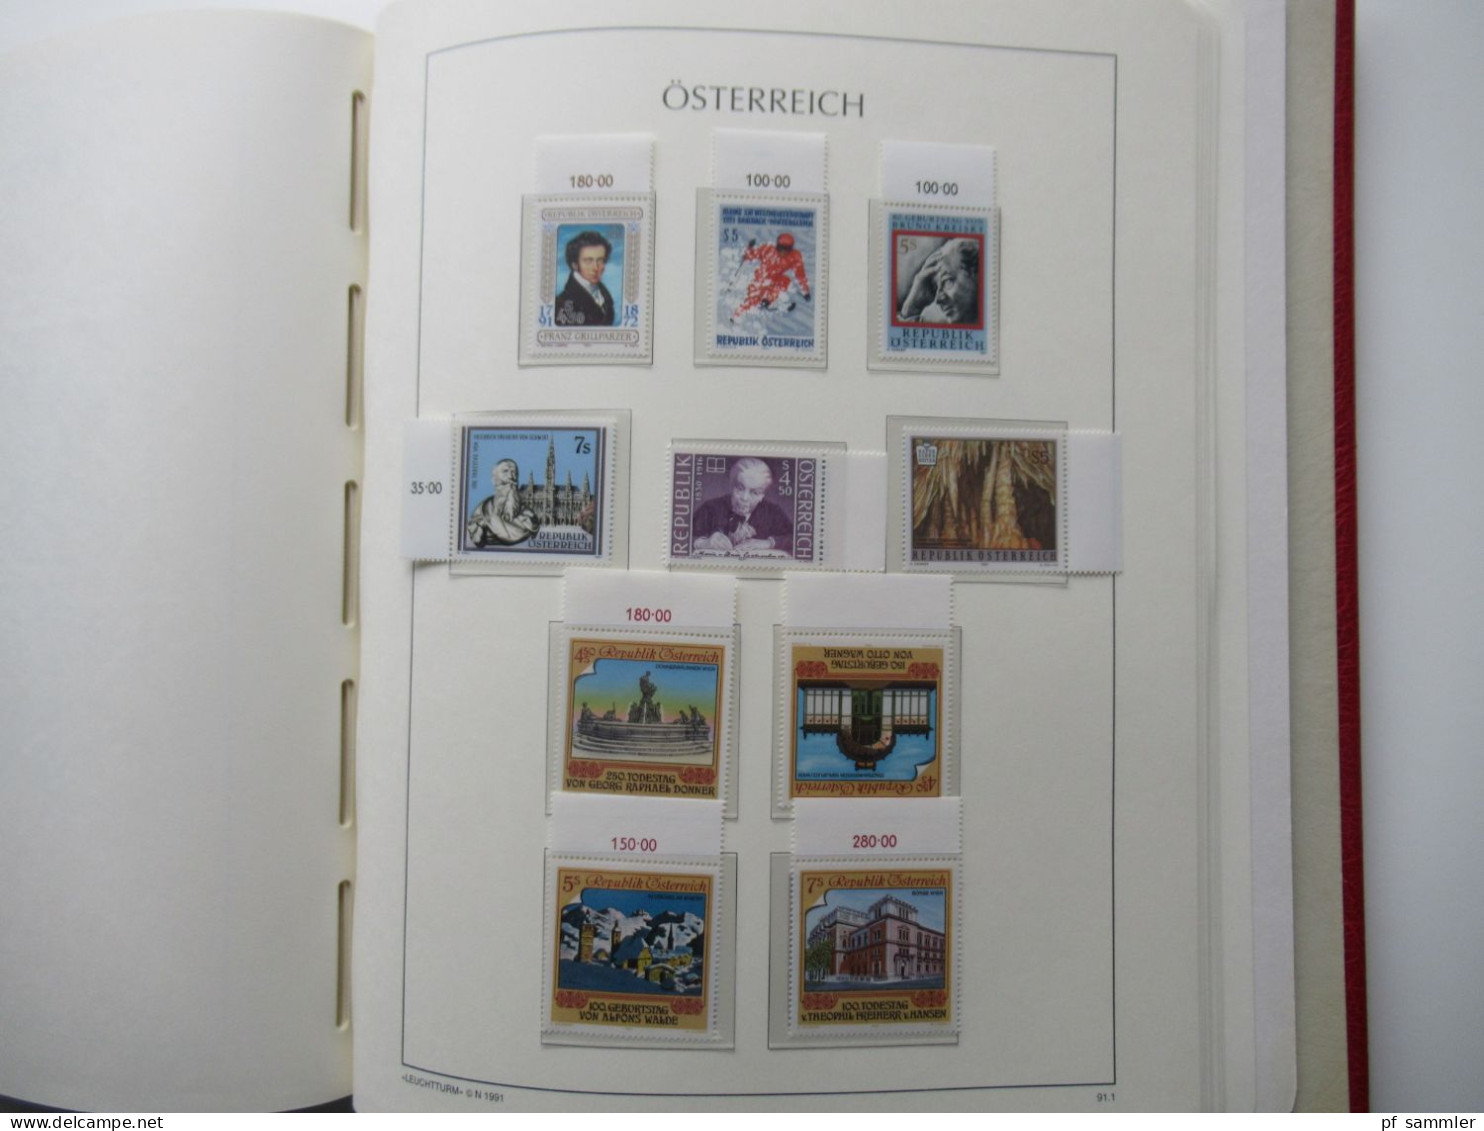 Österreich 1984- 1992 doppelt gesammelt ** und gestempelt etliche Randstücke! Schöne Sammlung im Leuchtturm VD Album